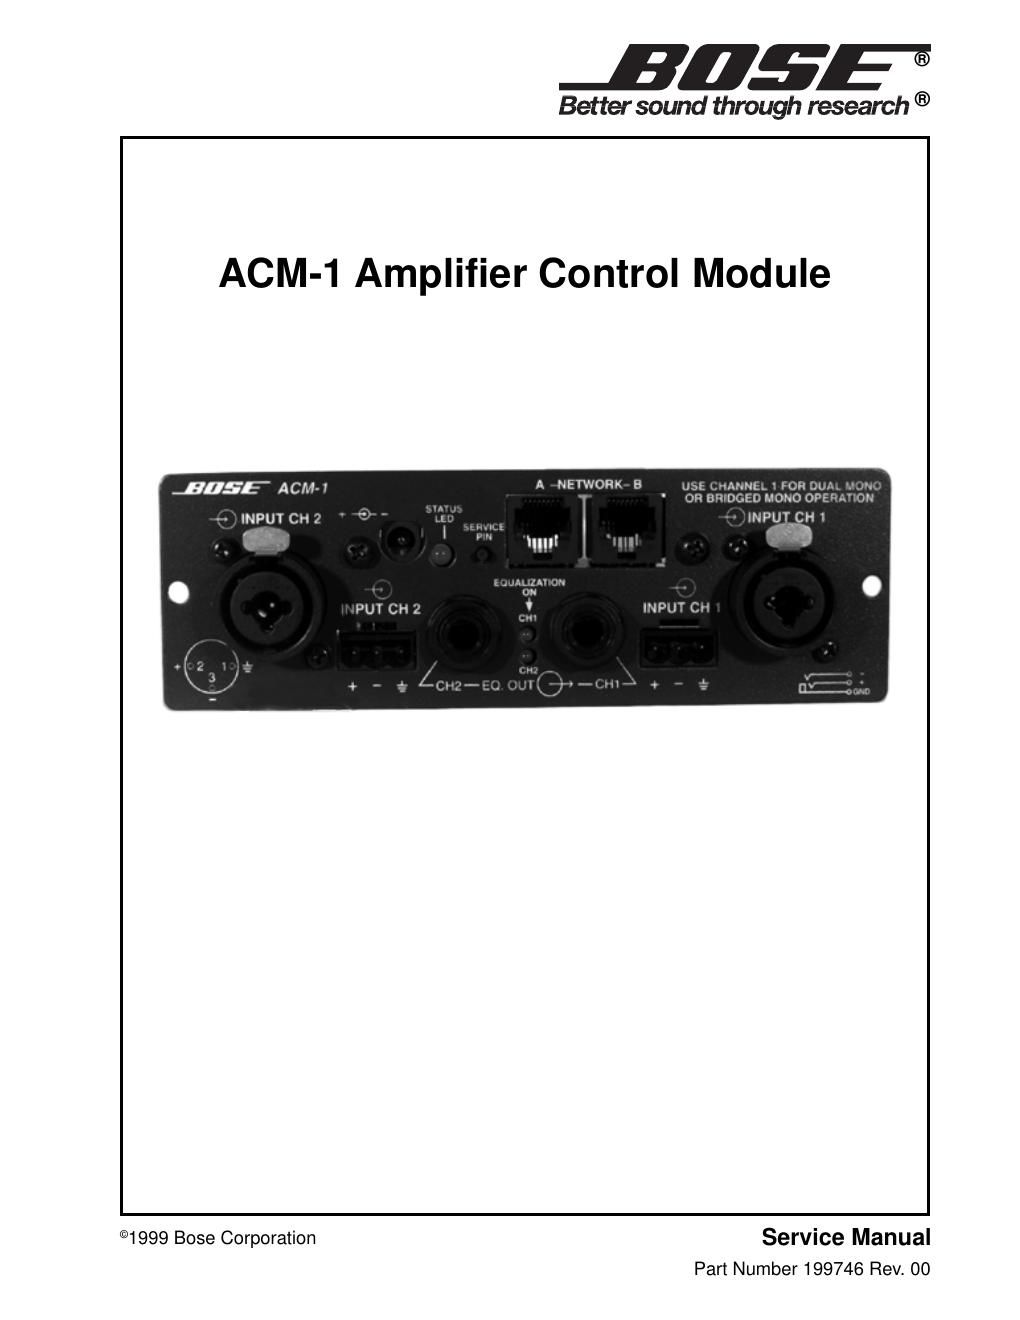 bose acm 1 amplifier control module service manual